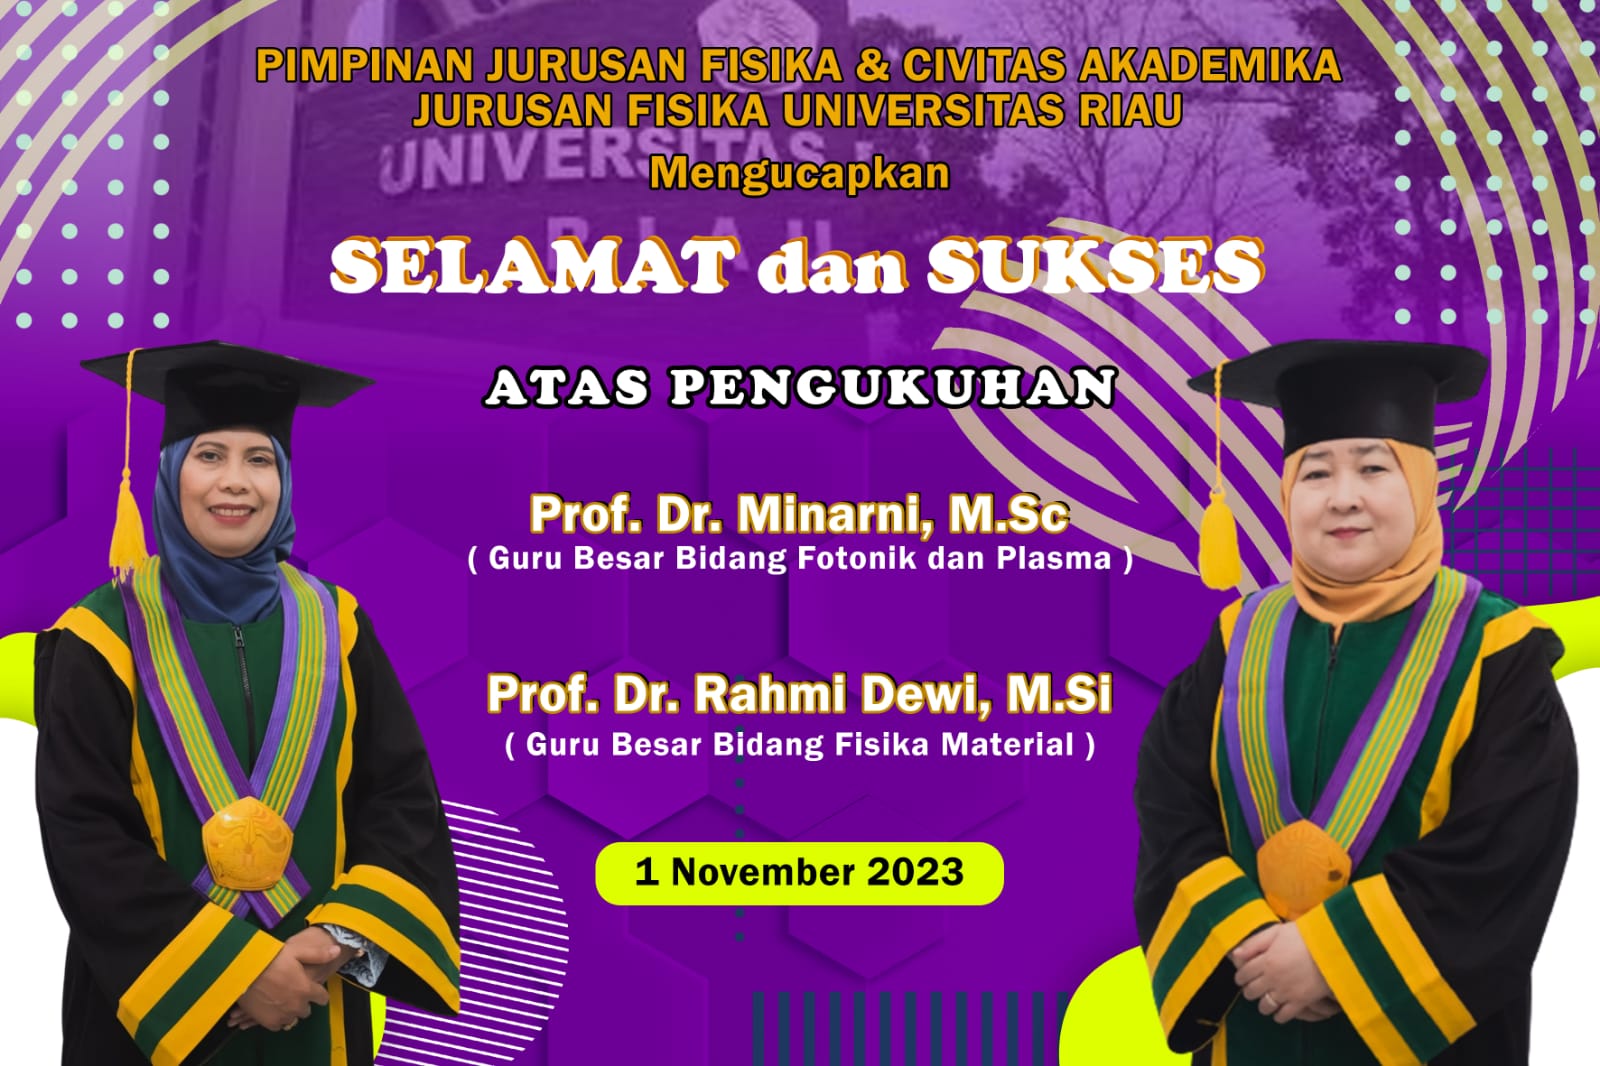 Pengukuhan Guru Besar Prof. Dr. Rahmi Dewi, M.Si. (Bidang Ilmu Fisika Material) dan Prof. Dr. Minarni, M.Sc. (Bidang Ilmu Fotonik dan Plasma)